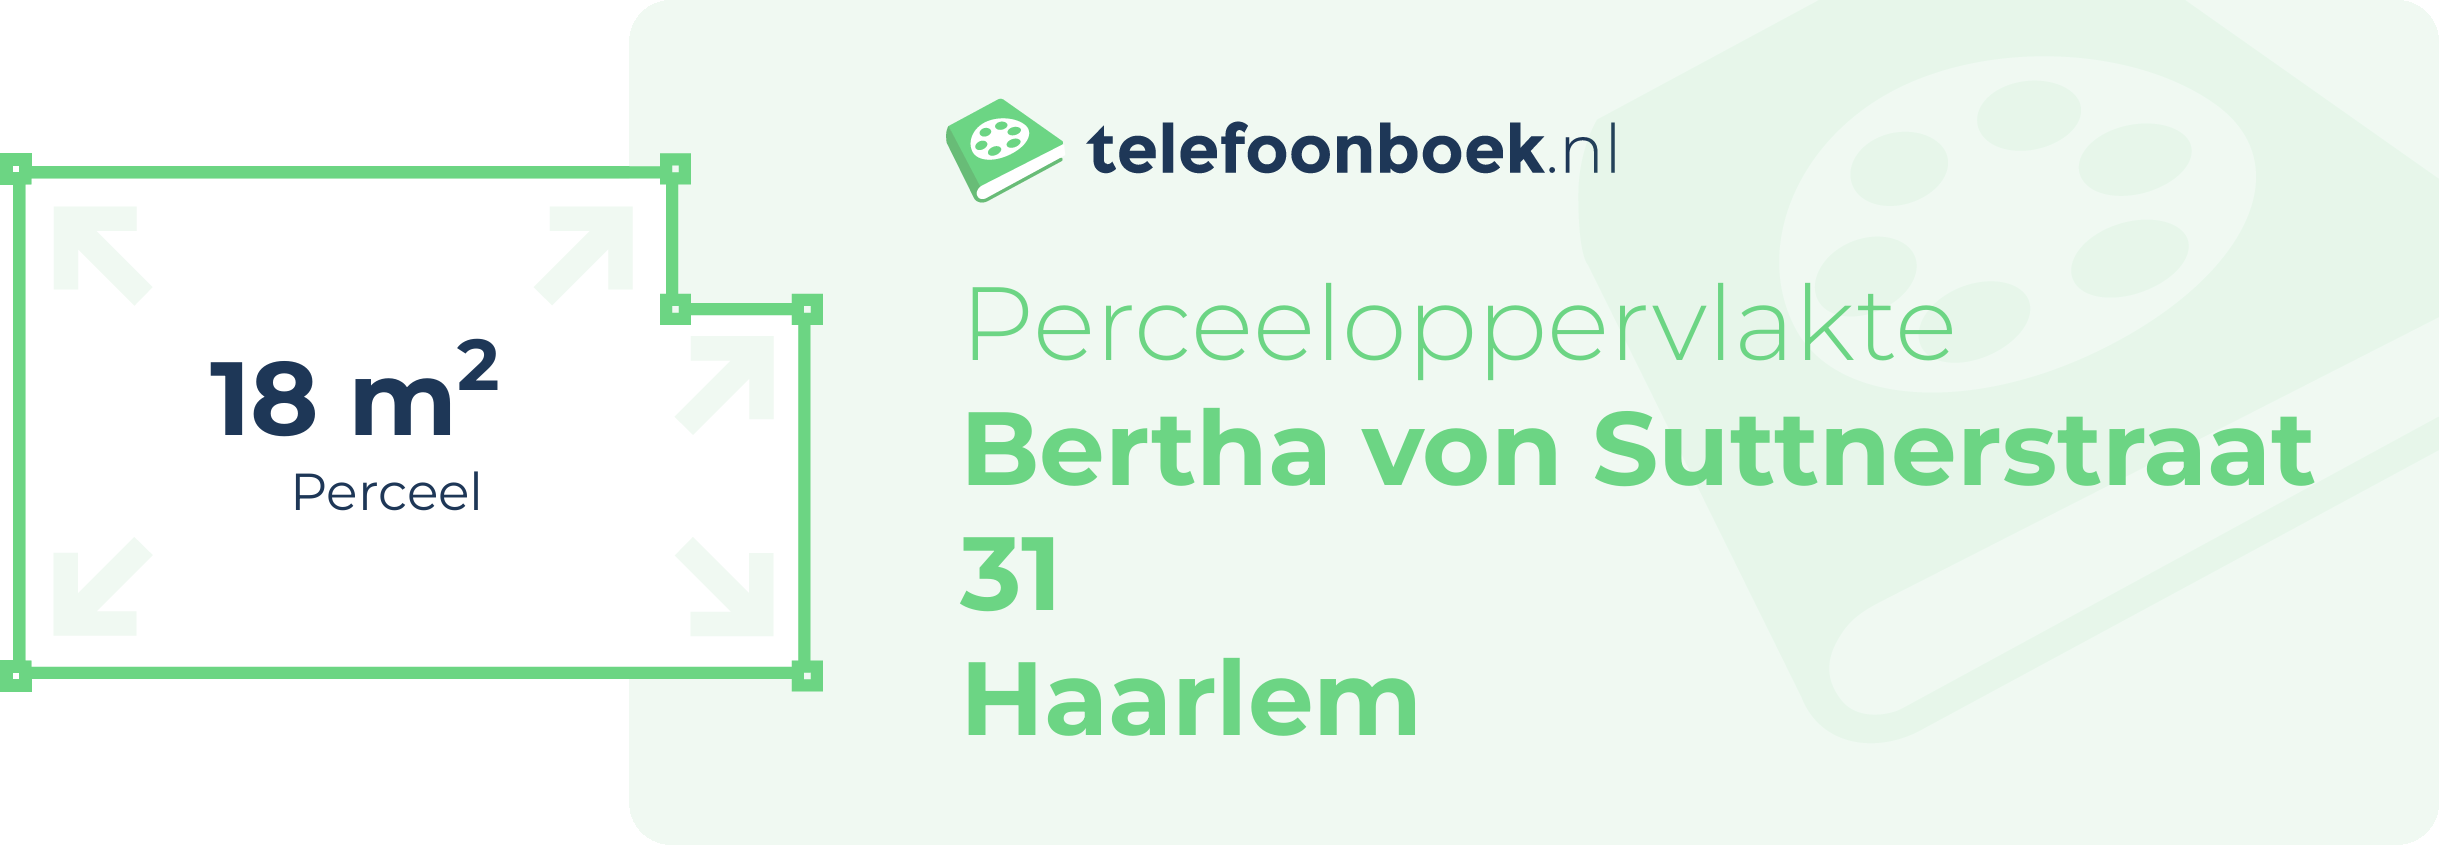 Perceeloppervlakte Bertha Von Suttnerstraat 31 Haarlem